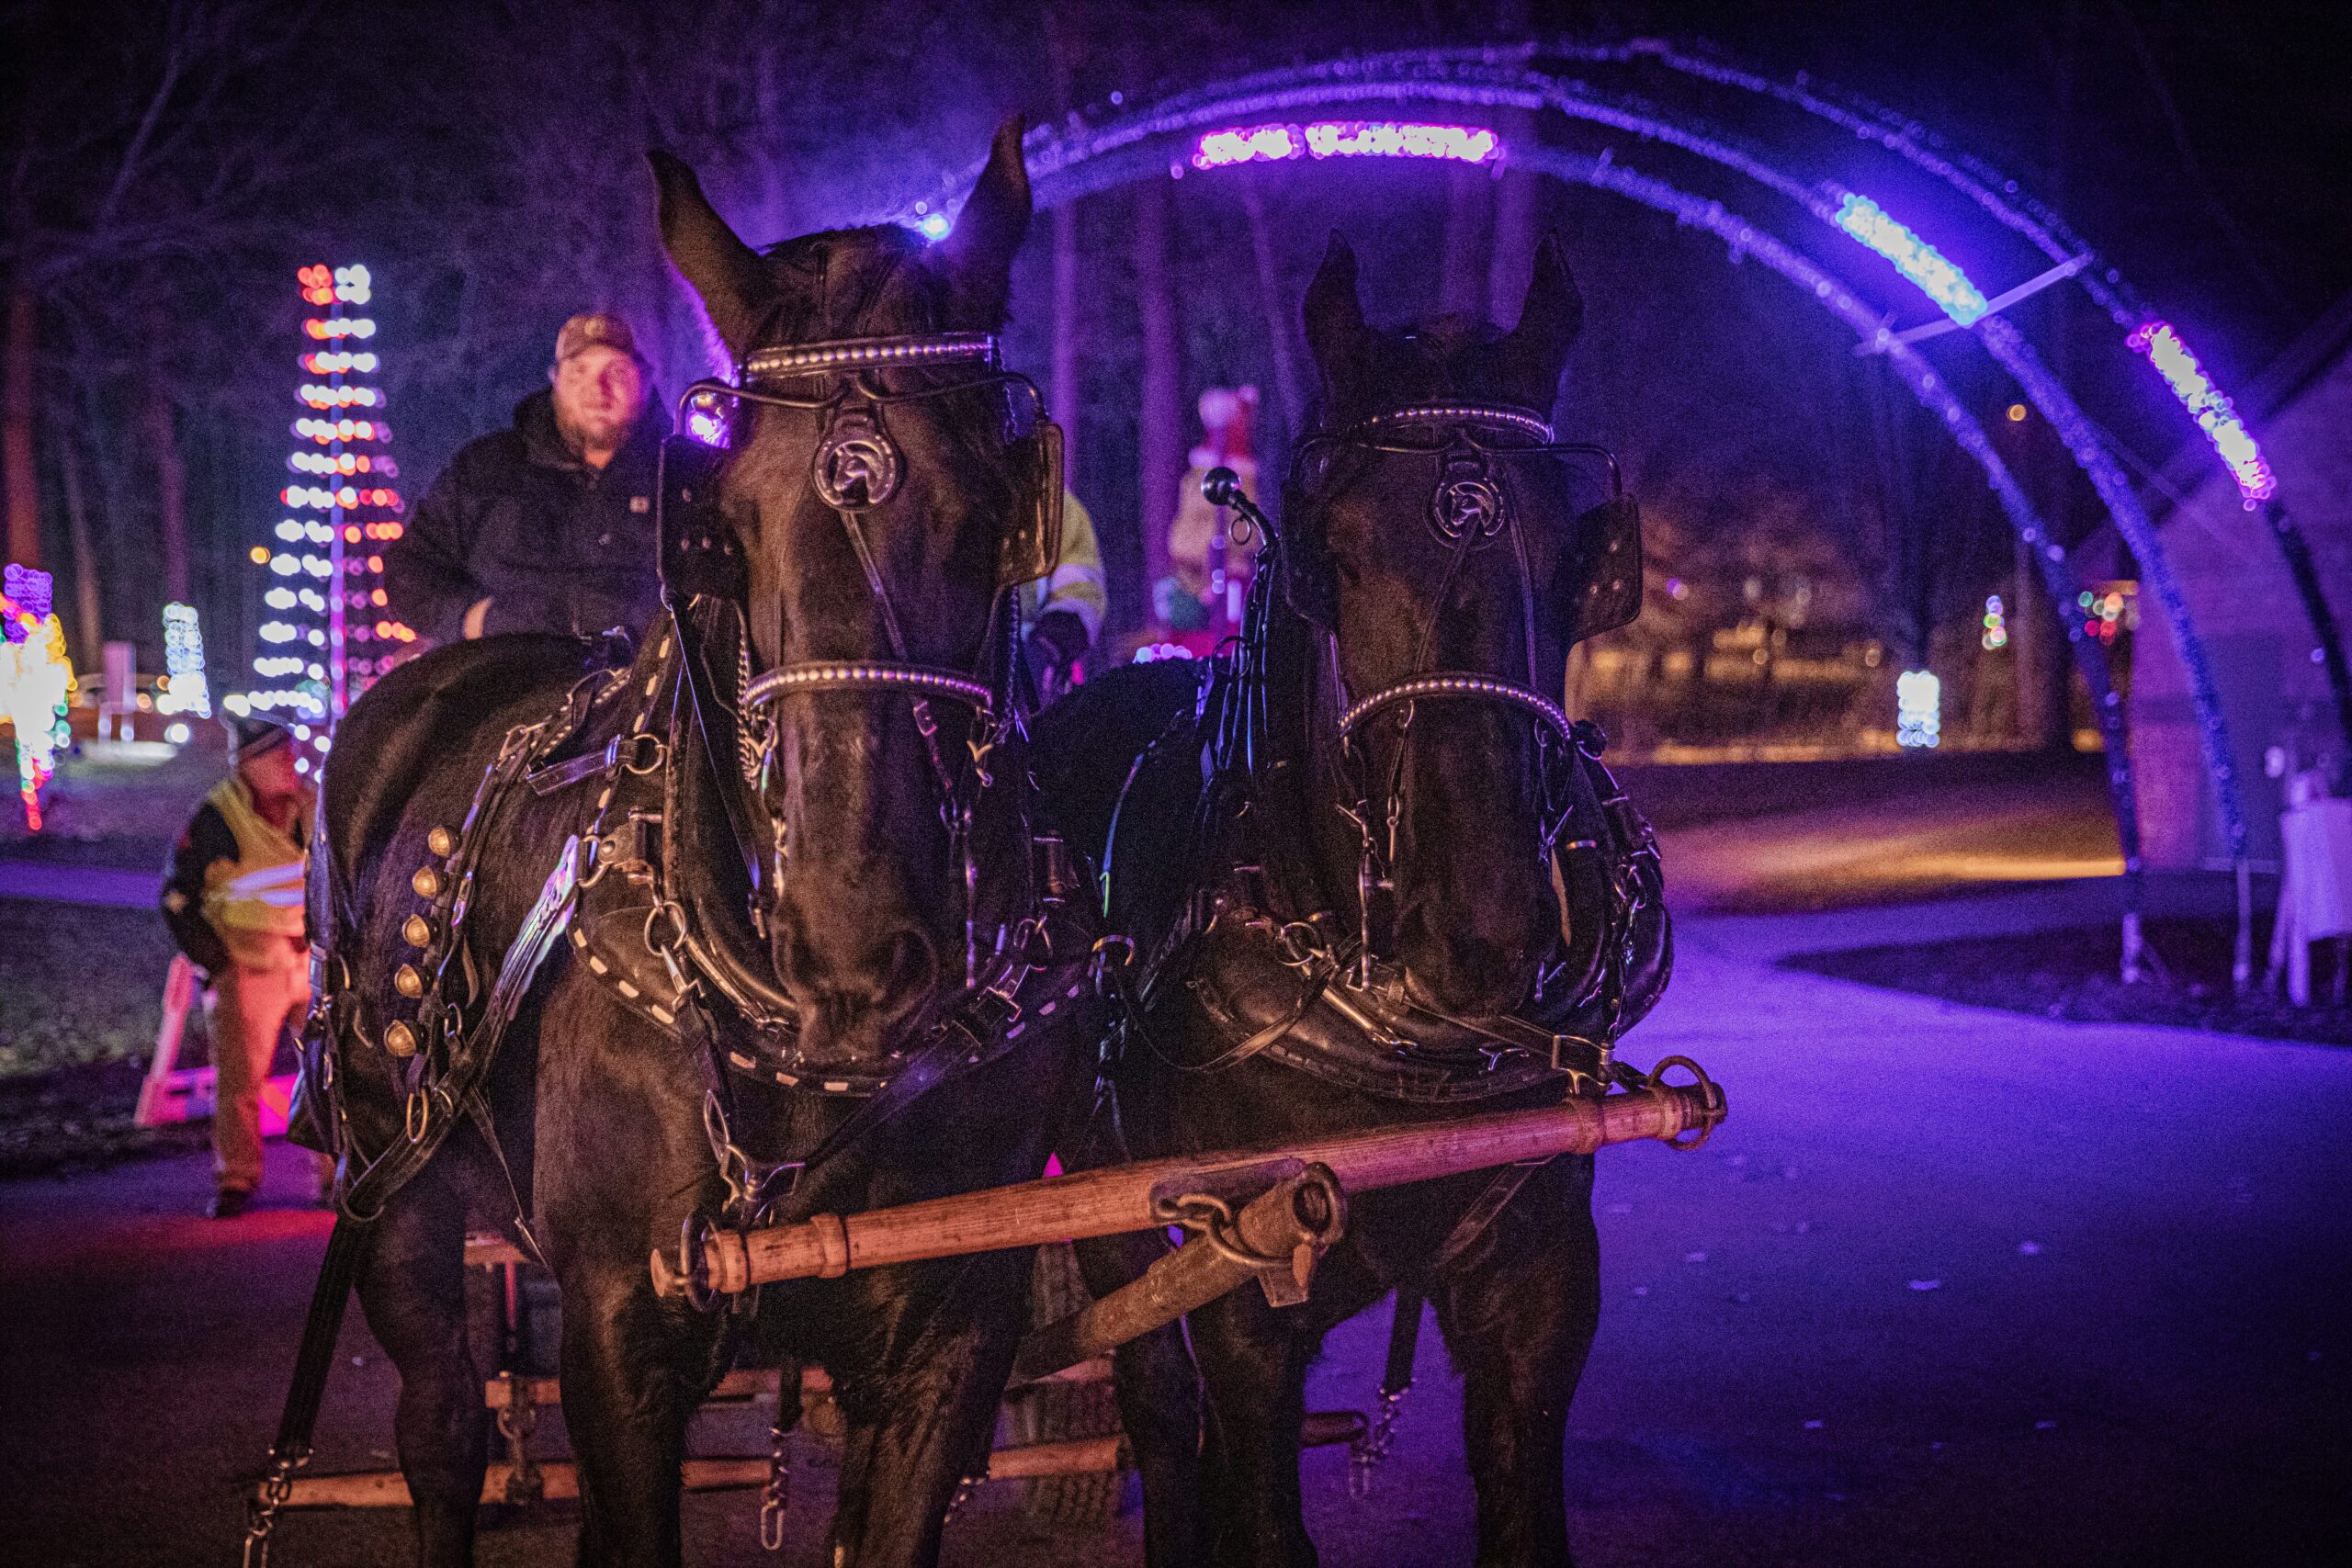 Horses pulling a wagon